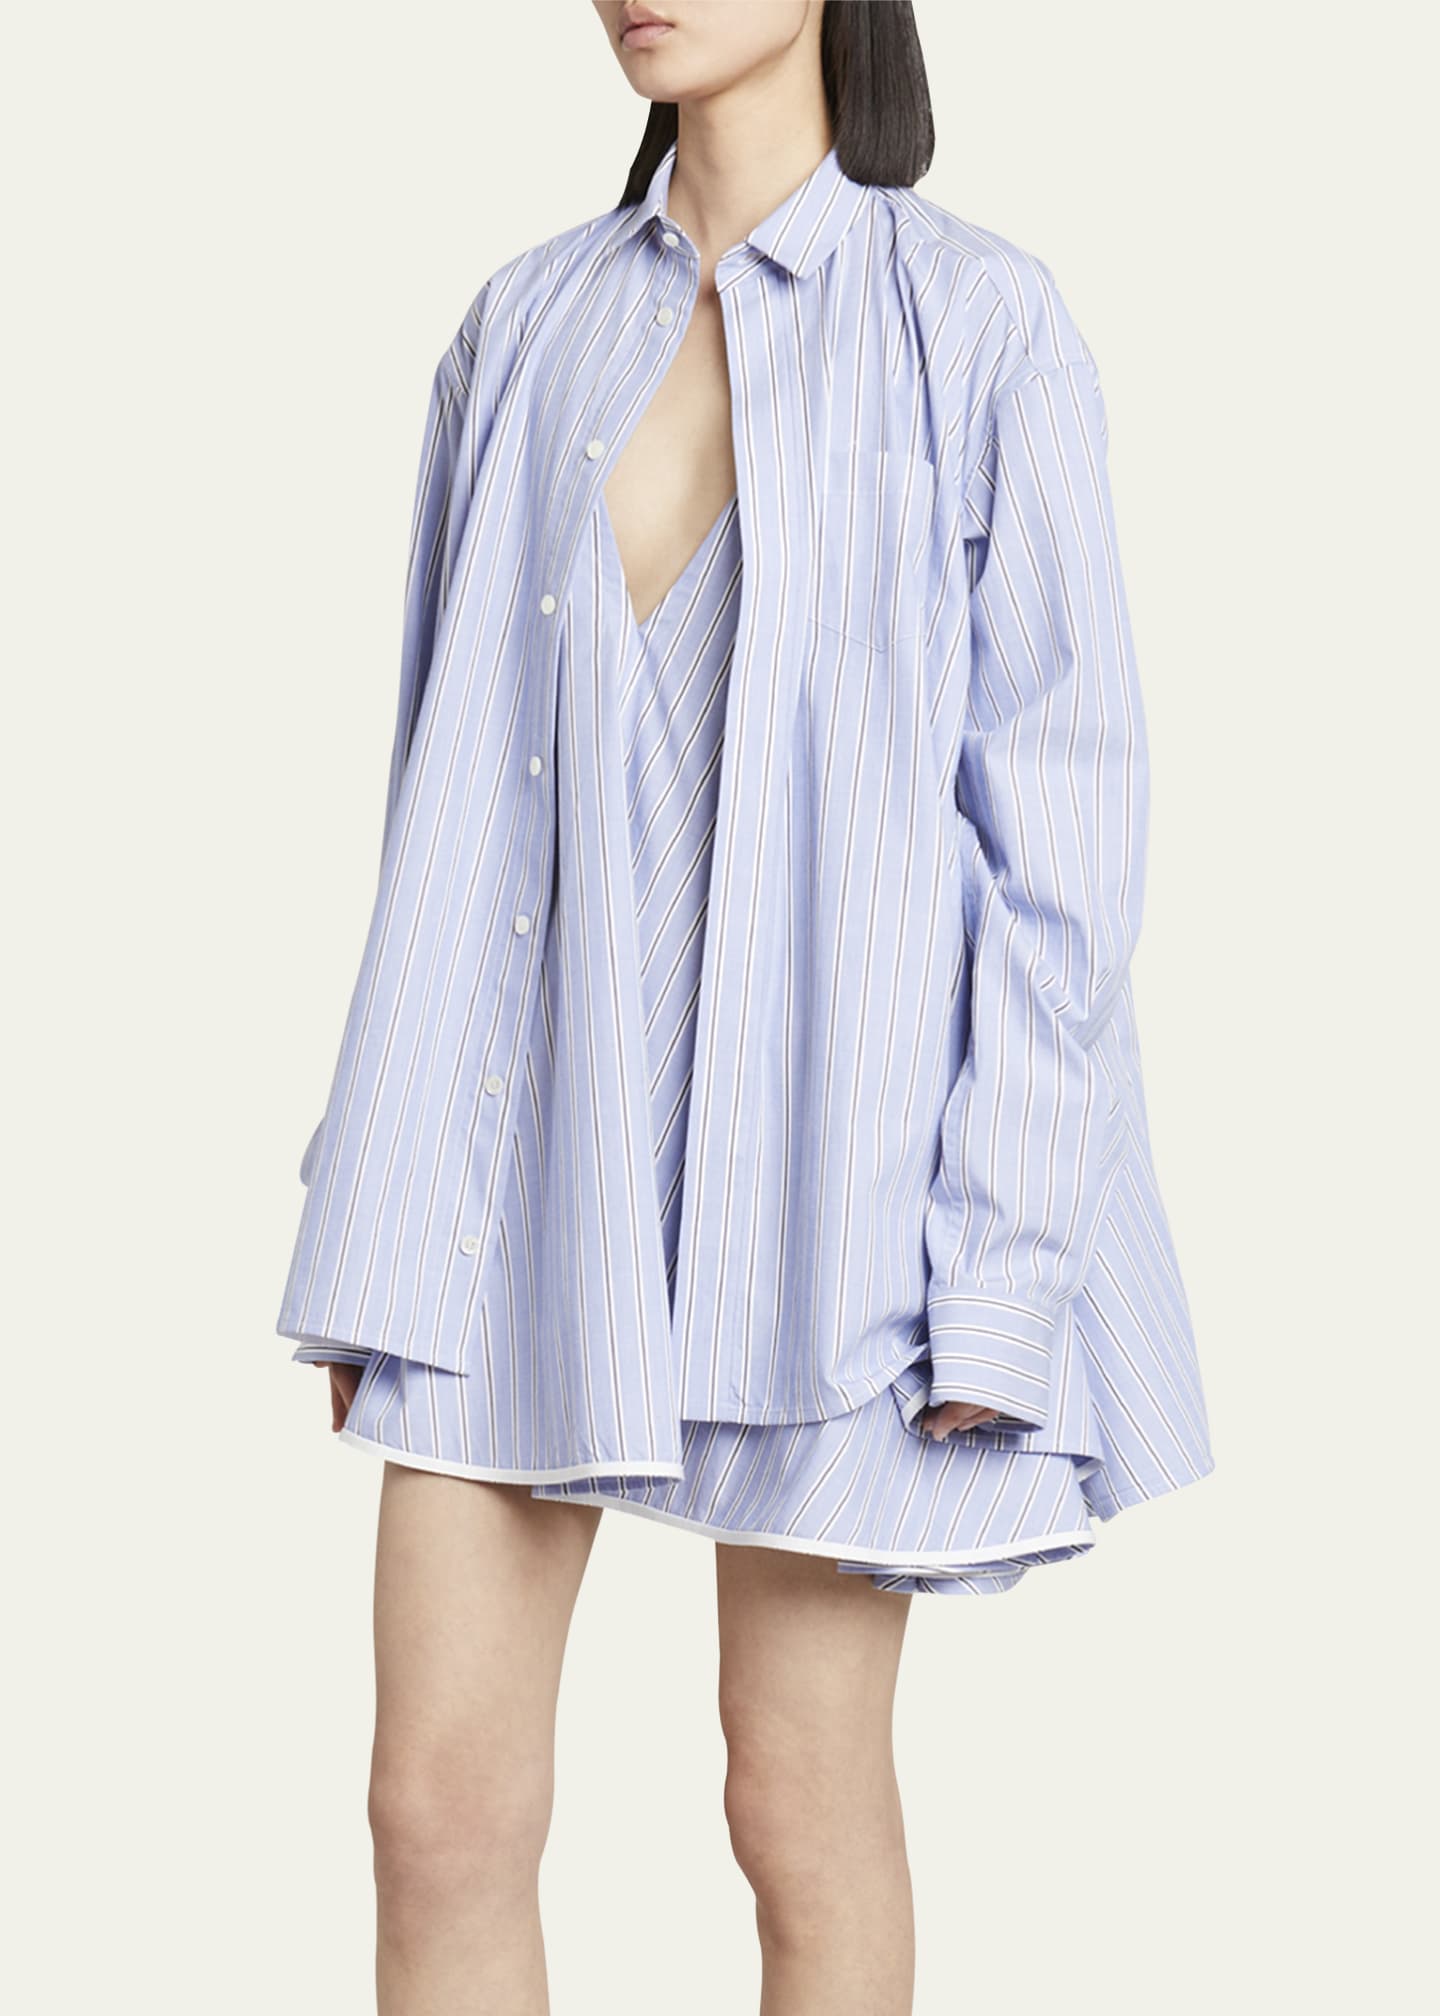 SACAI Layered Button-Front Shirtdress - Bergdorf Goodman